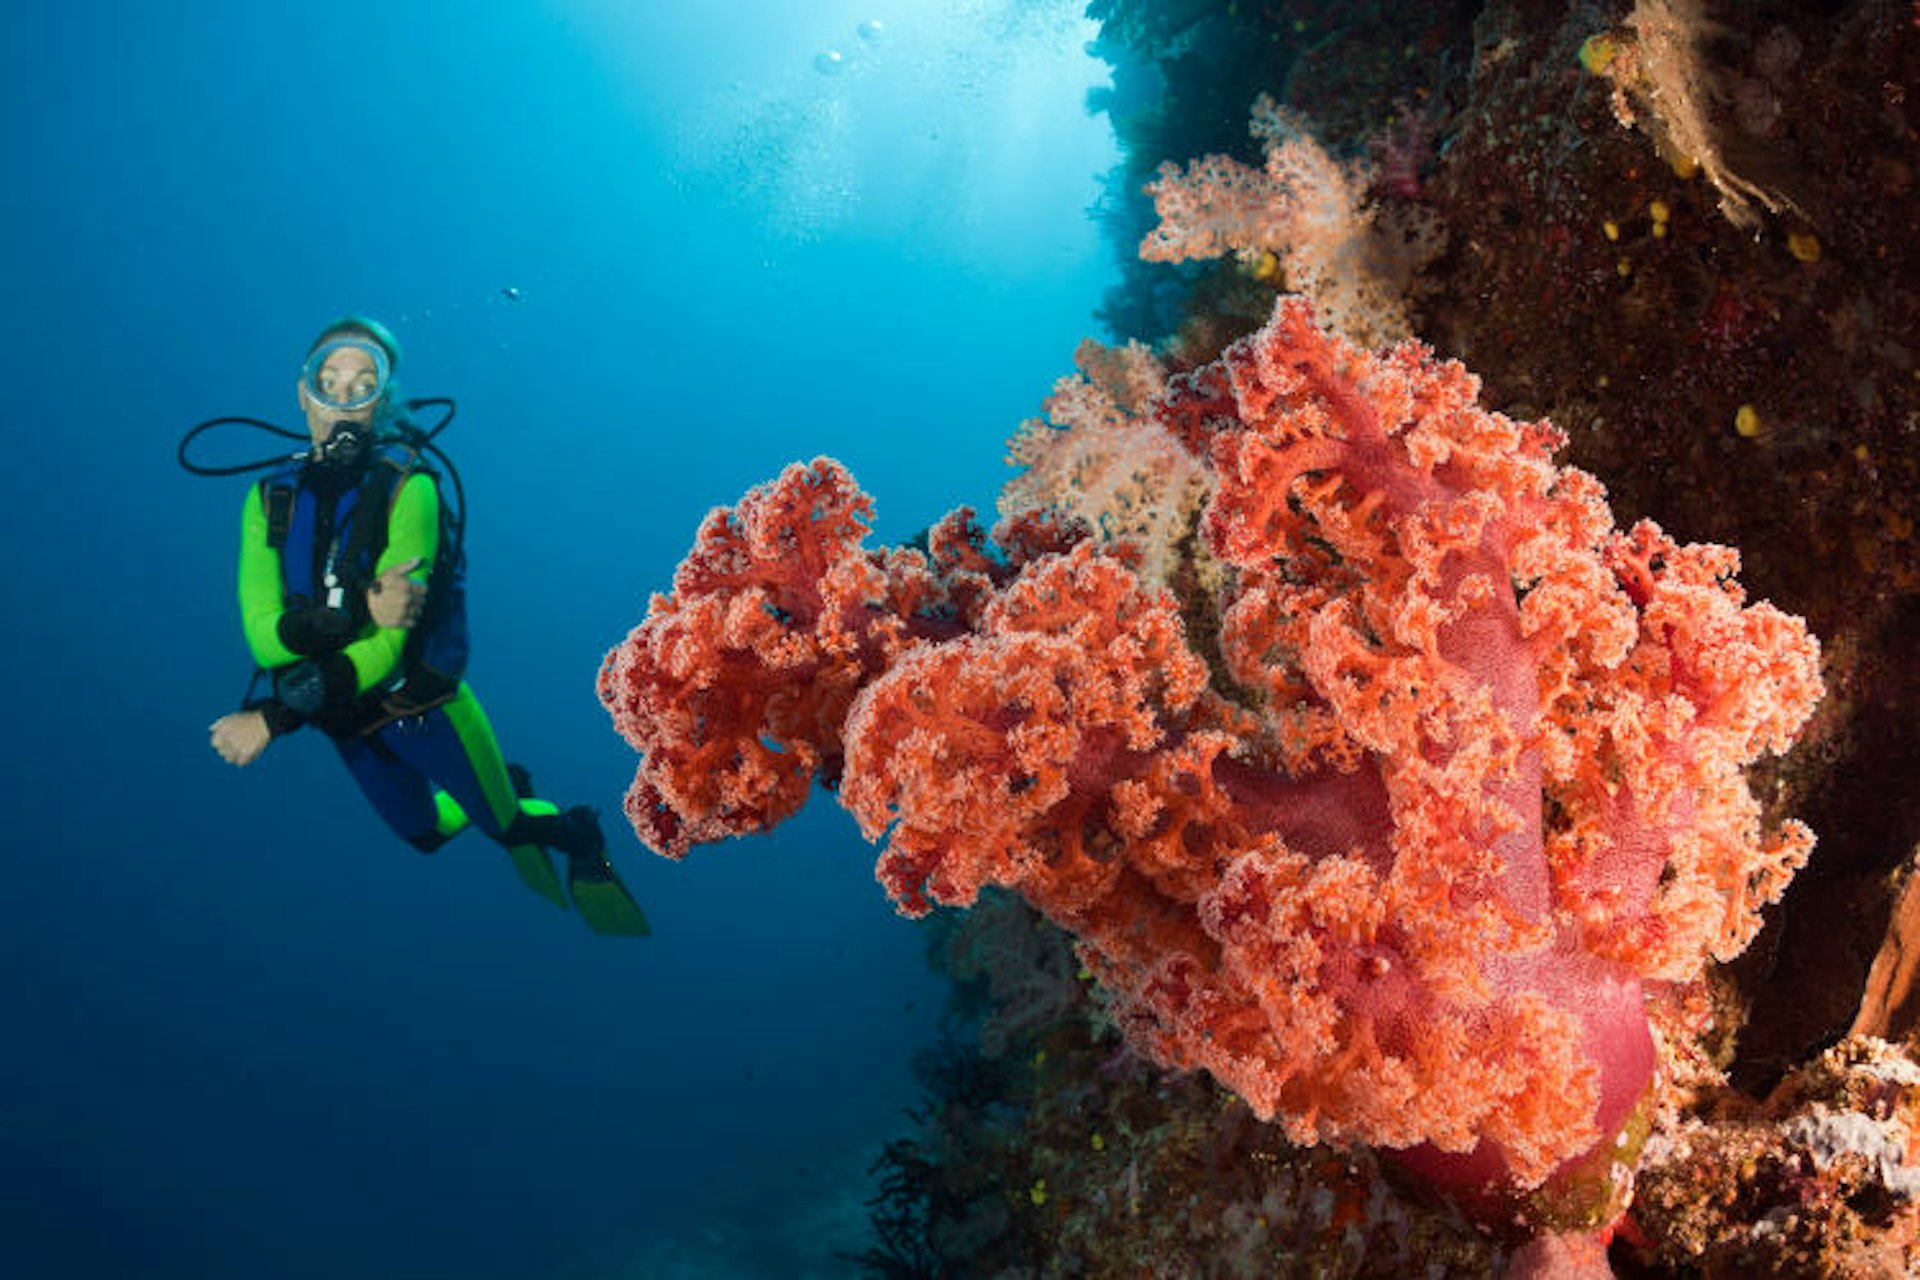 Scuba diving around the coral reef of Namena Marine Reserve. Image by Reinhard Dirscherl / ullstein bild / Getty Images